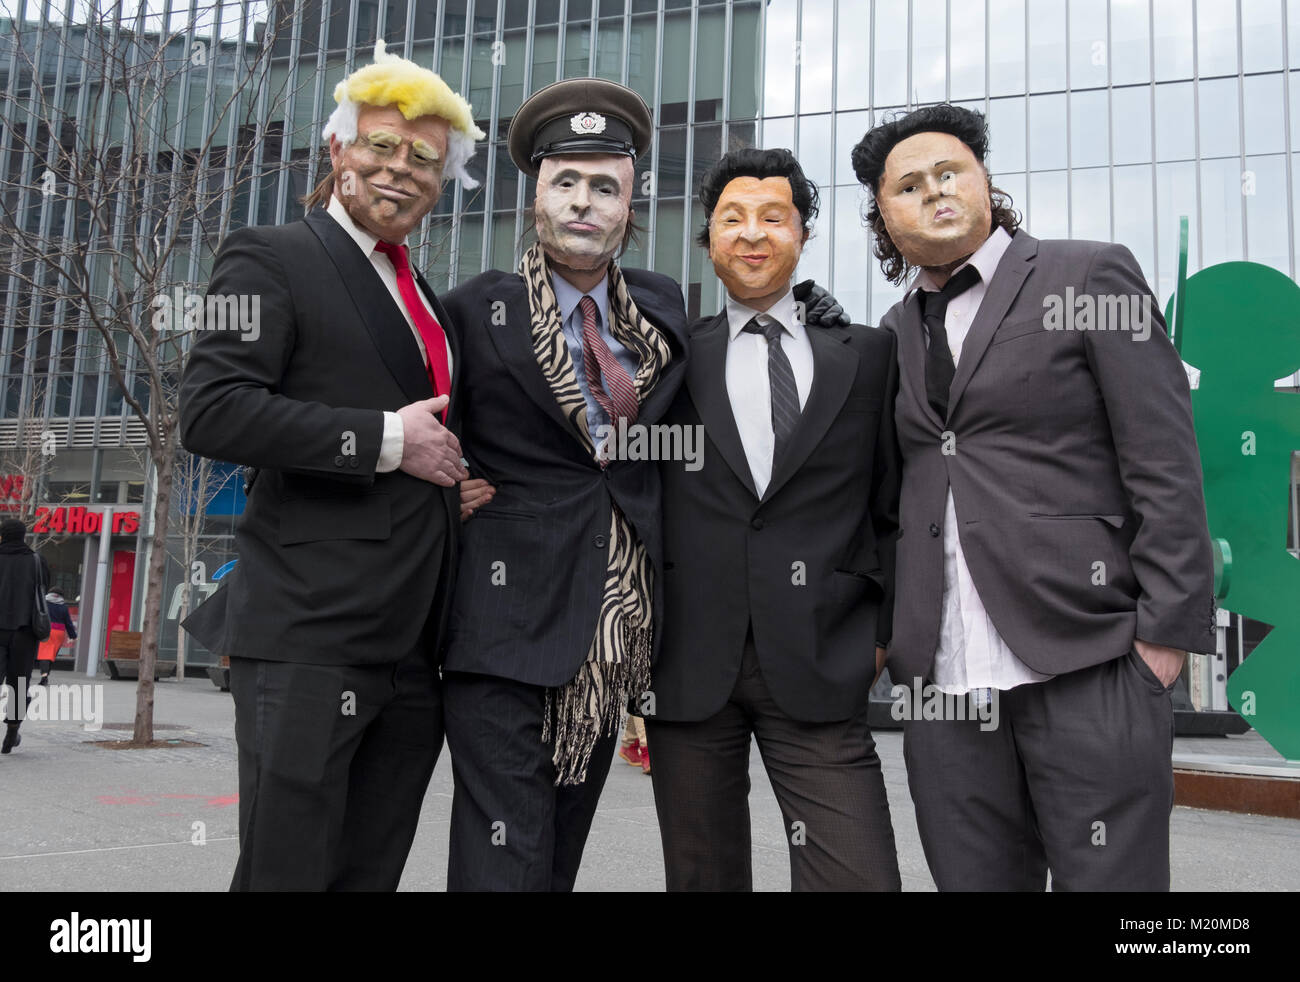 Mitglieder der Band Ultra in Masken für ein Musikvideo. Sie sind, wie Donald Trump, Xi Jinpeng, Wladimir Putin & Kim Jong Un gekleidet. Stockfoto